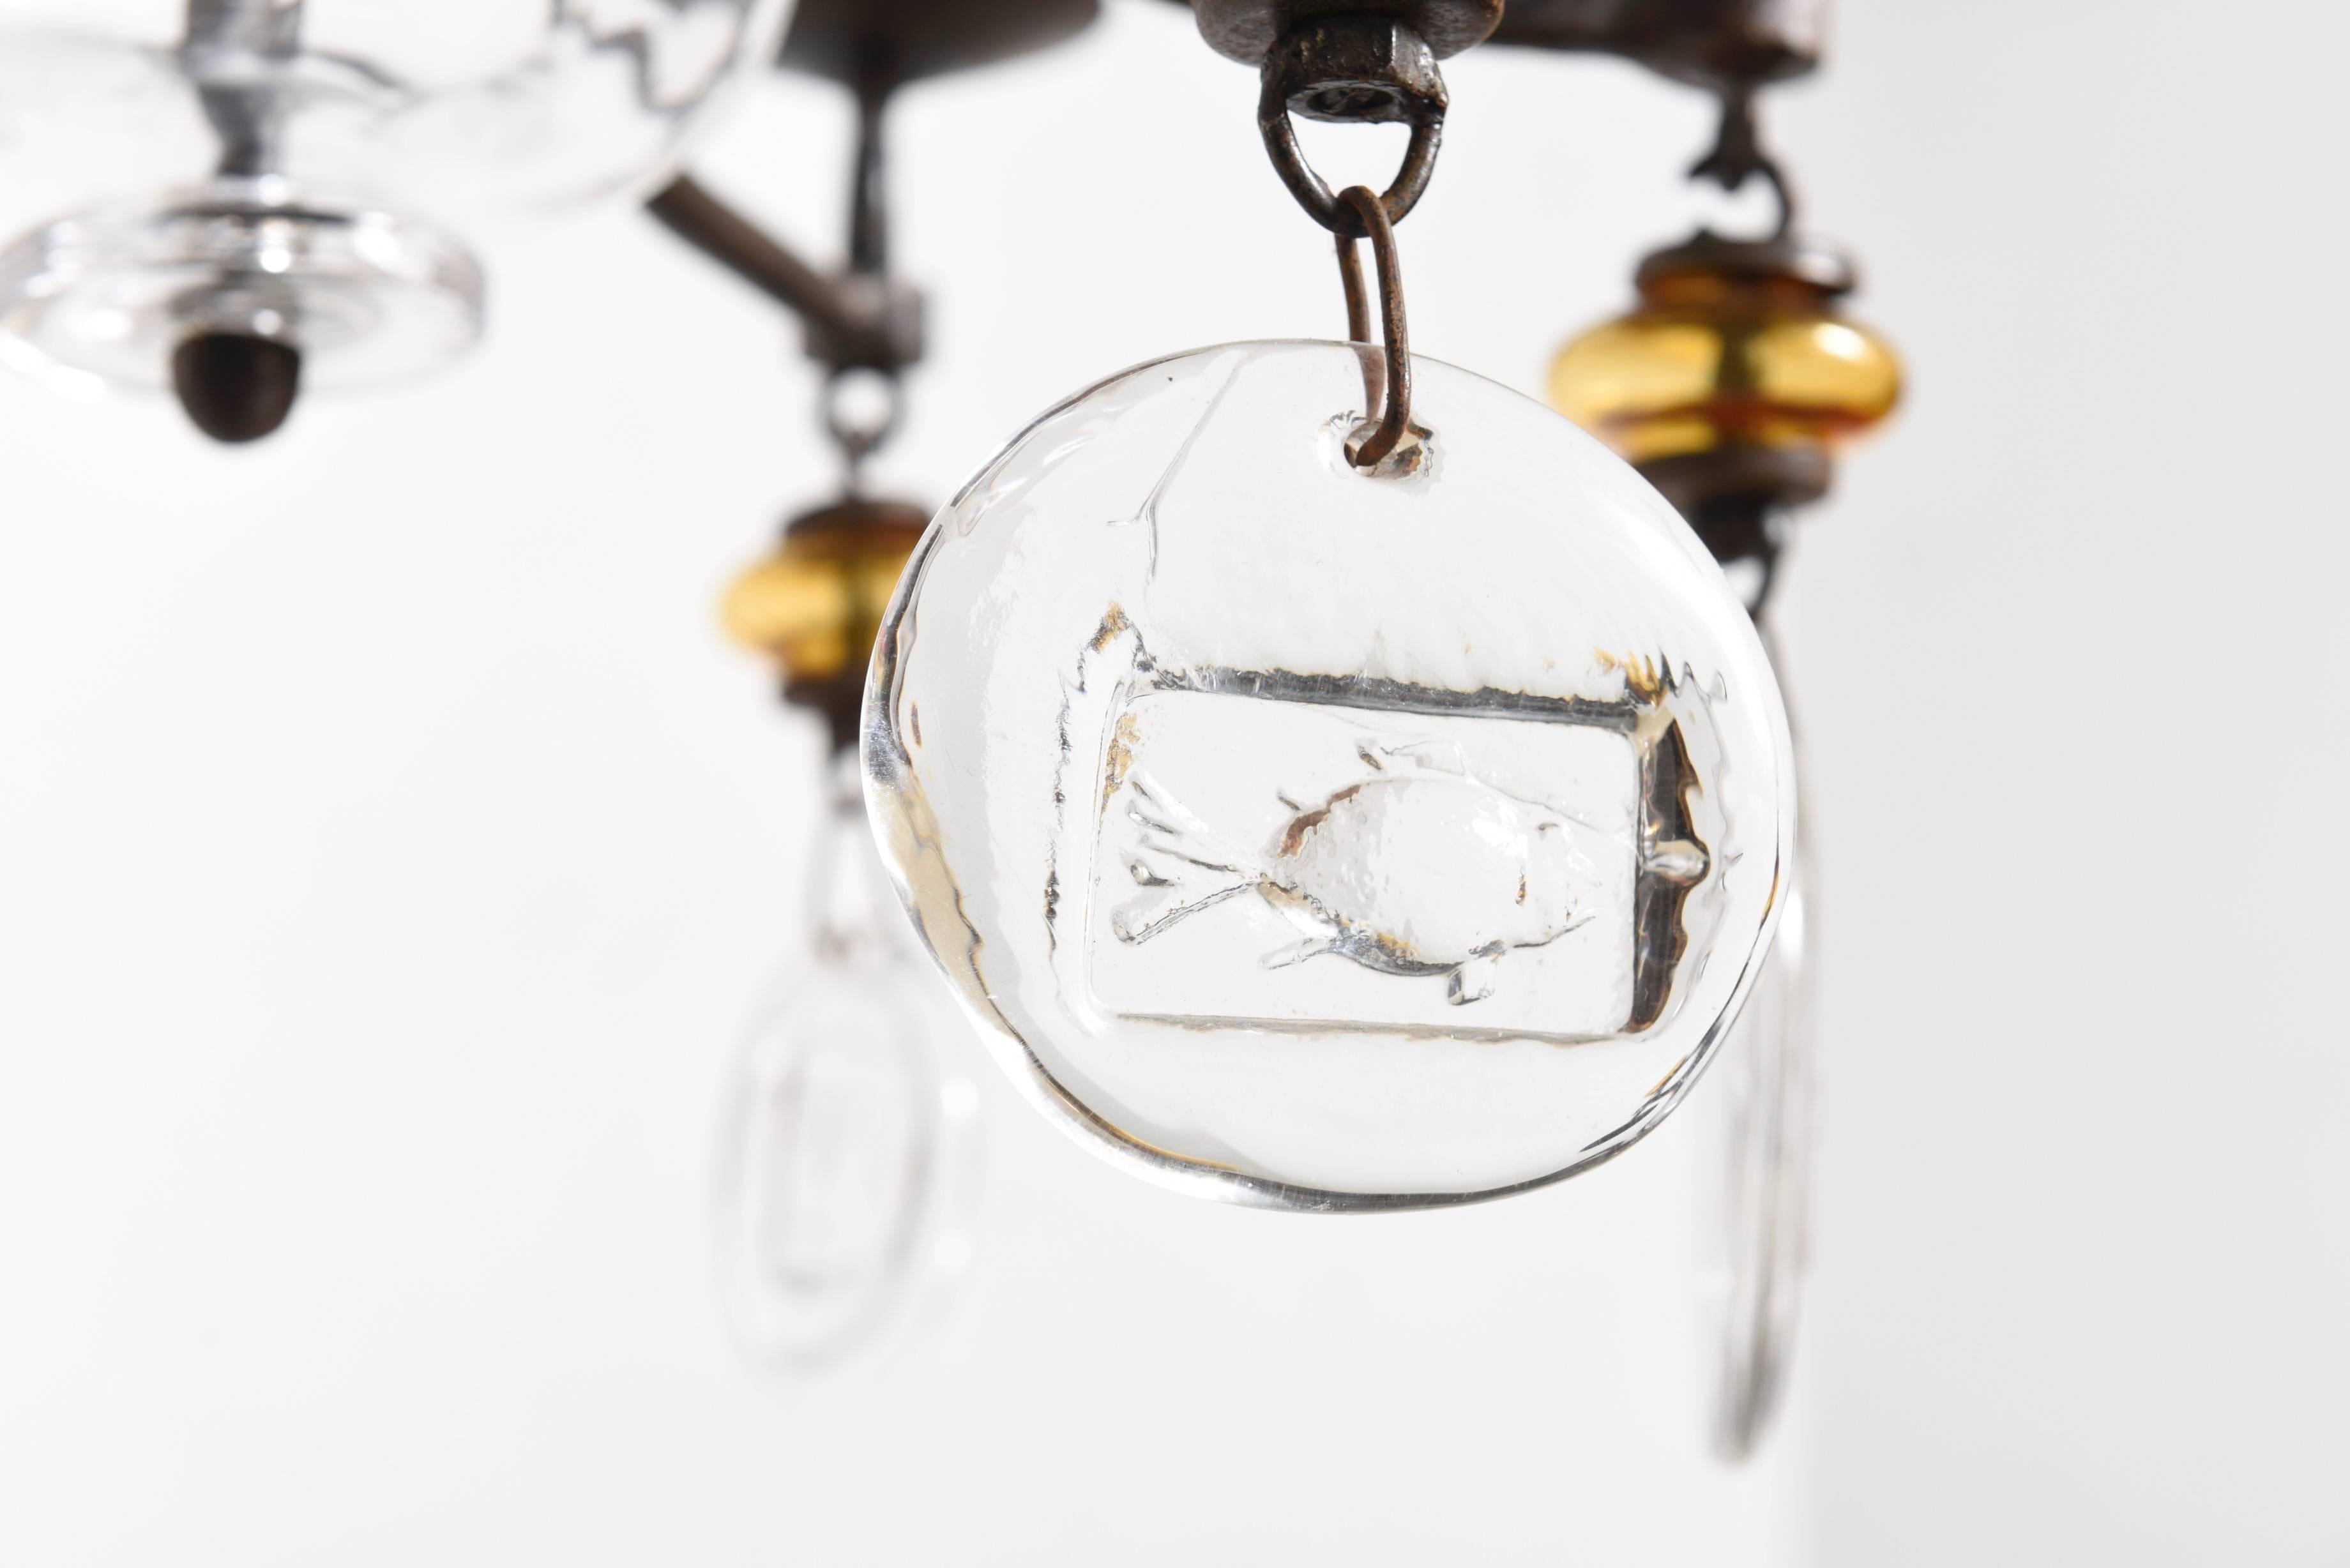 Fired Hanging Candelabra by Erik Hoglund for Boda Nova Glassworks